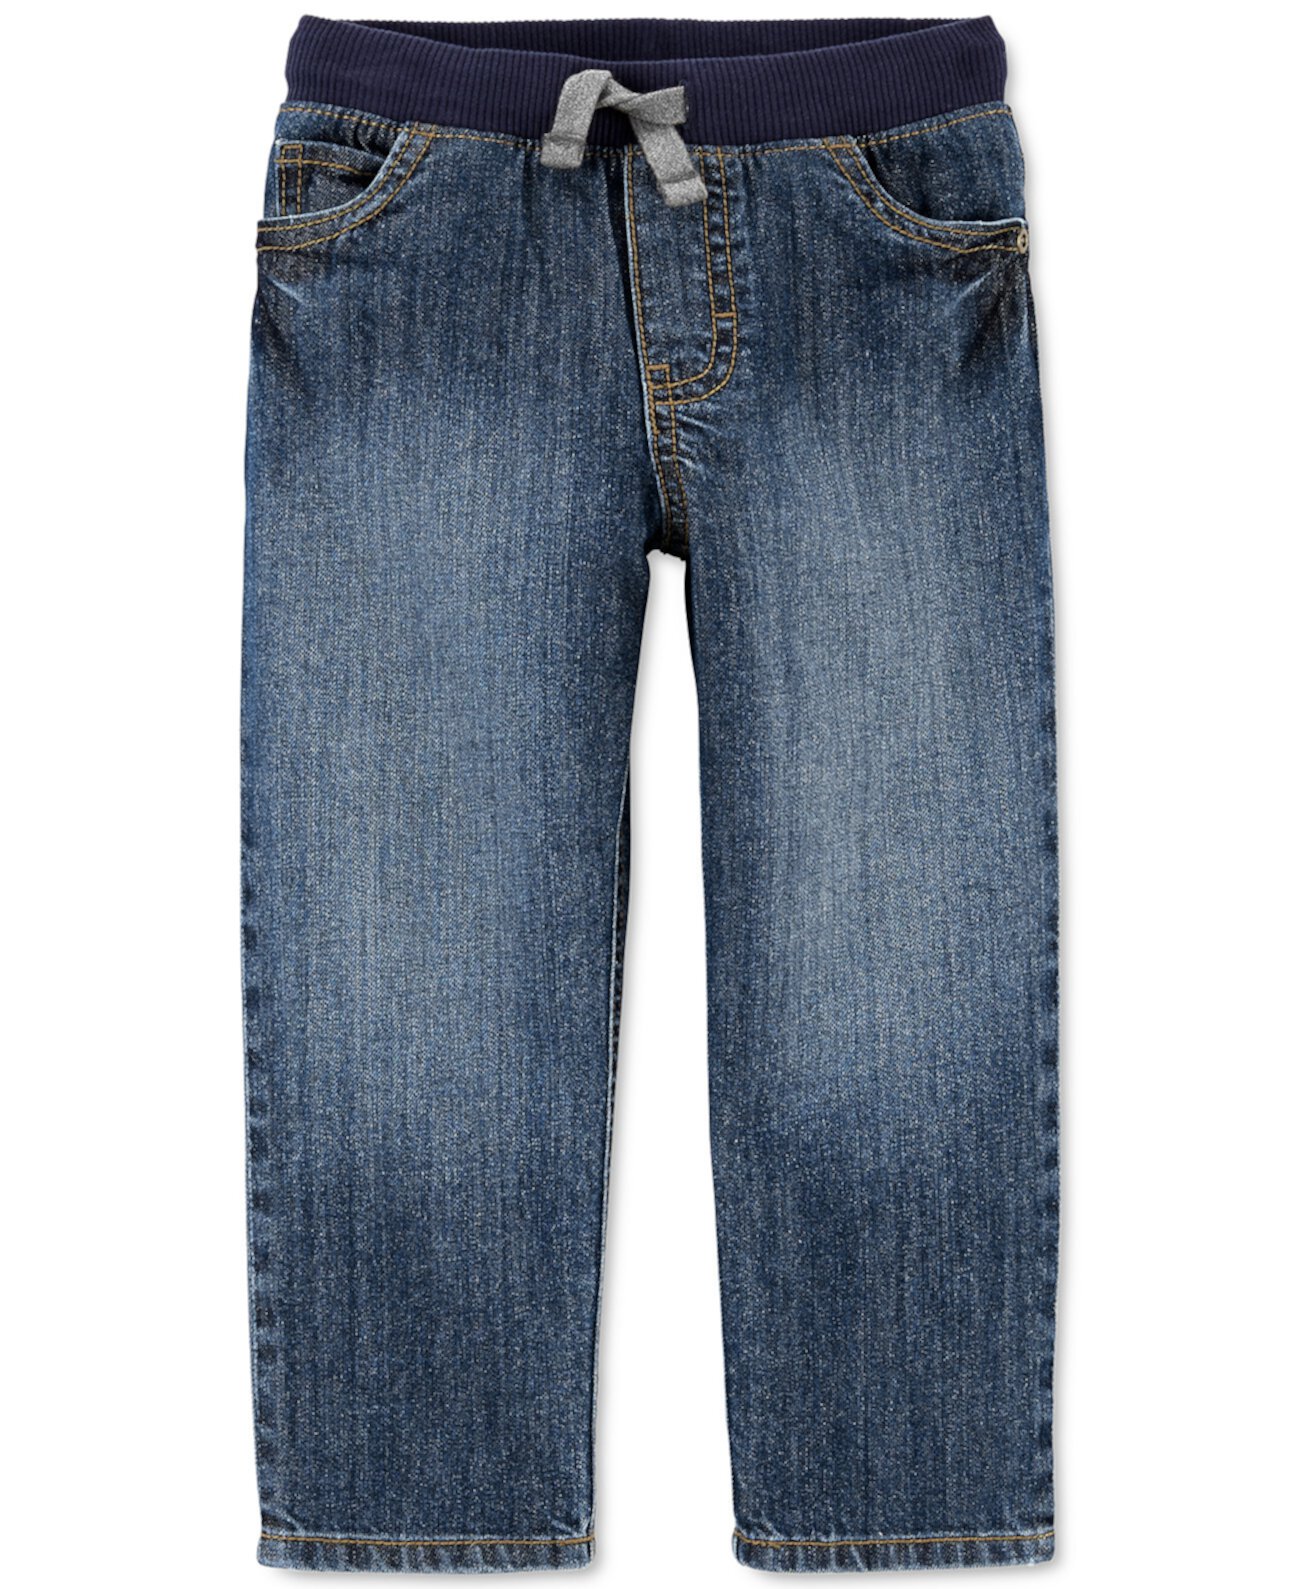 Джинсовые джинсы повседневного ношения для маленьких мальчиков без застежки Carter's